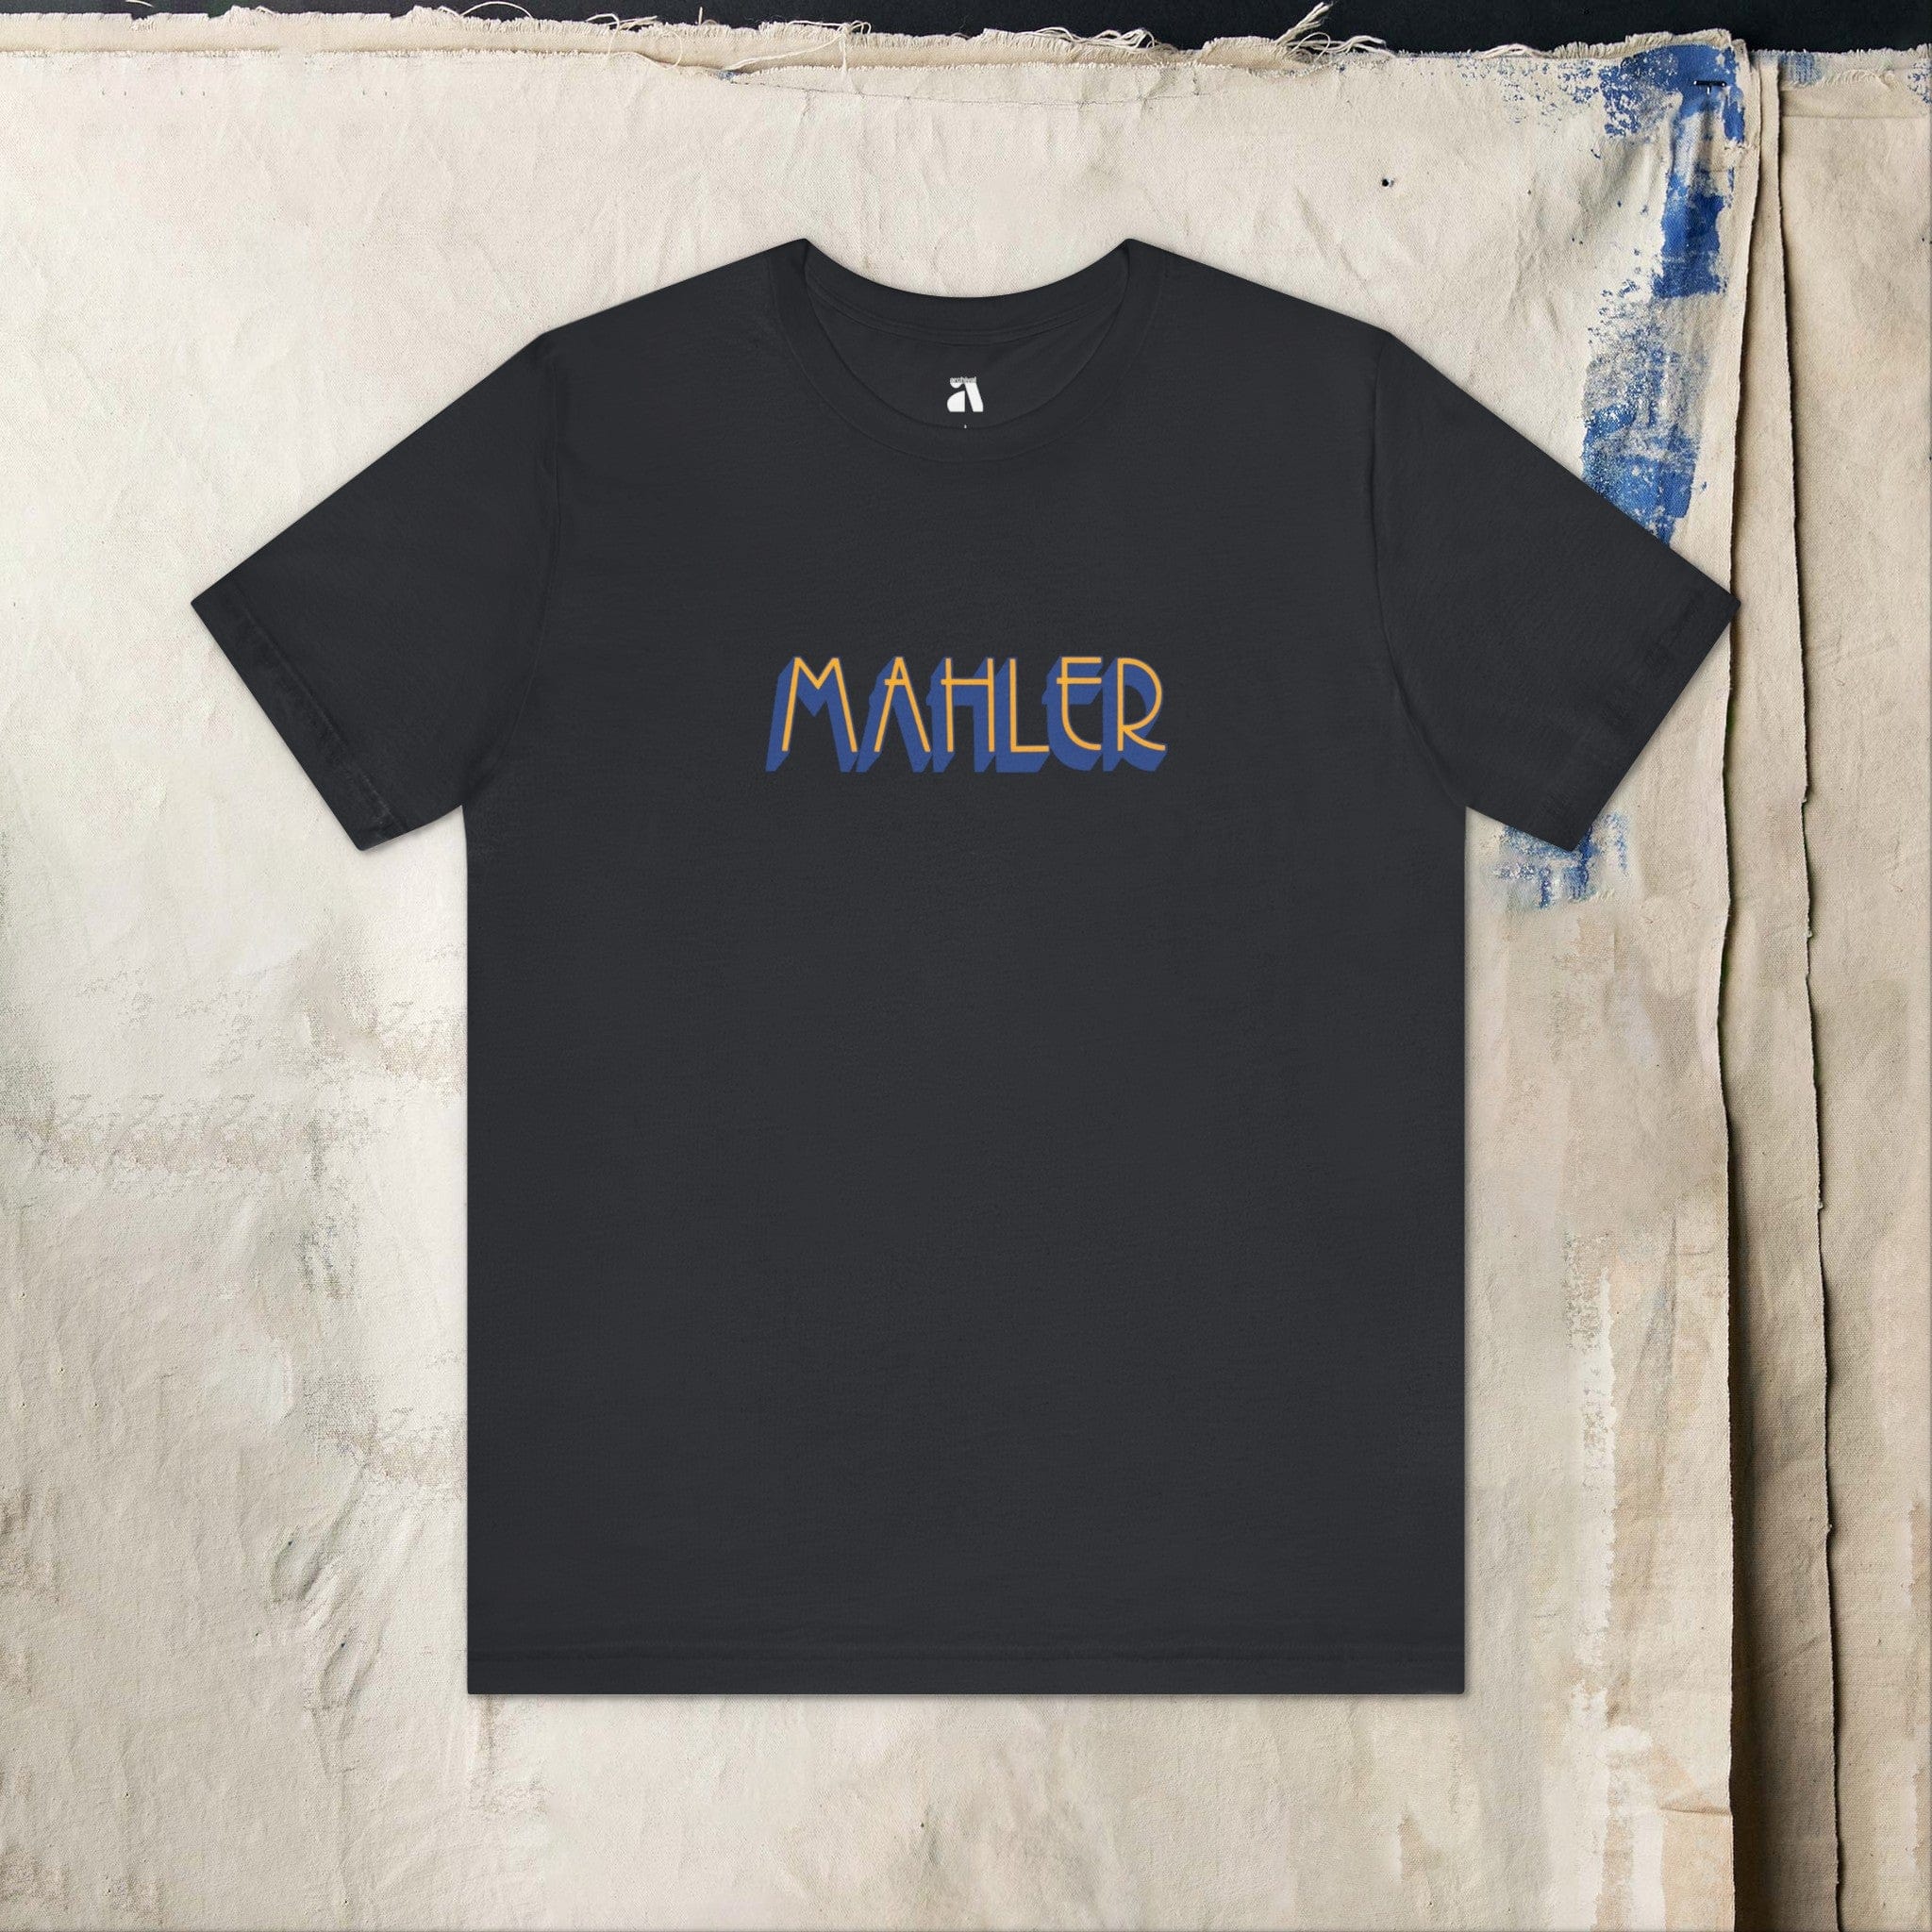 Mahler: Wordmark T-Shirt